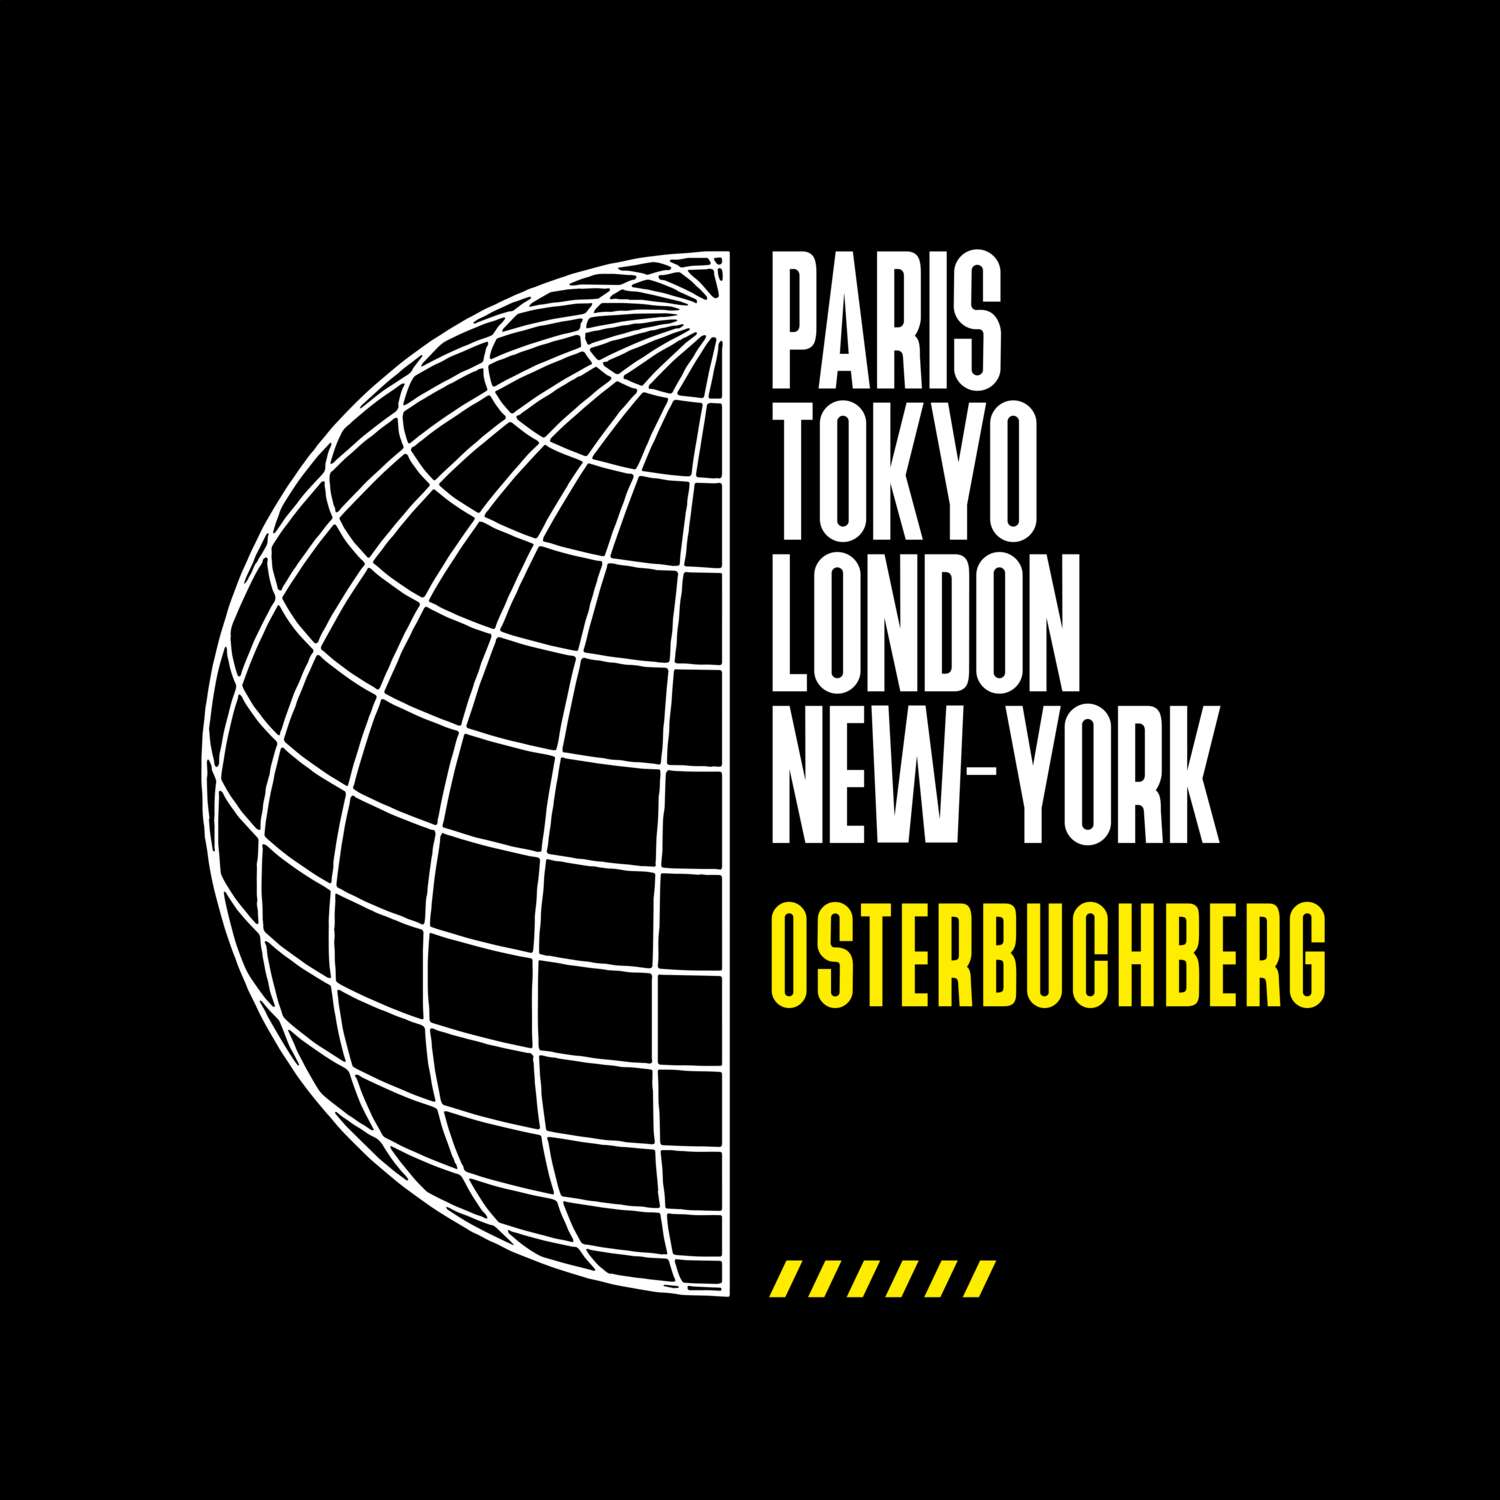 Osterbuchberg T-Shirt »Paris Tokyo London«